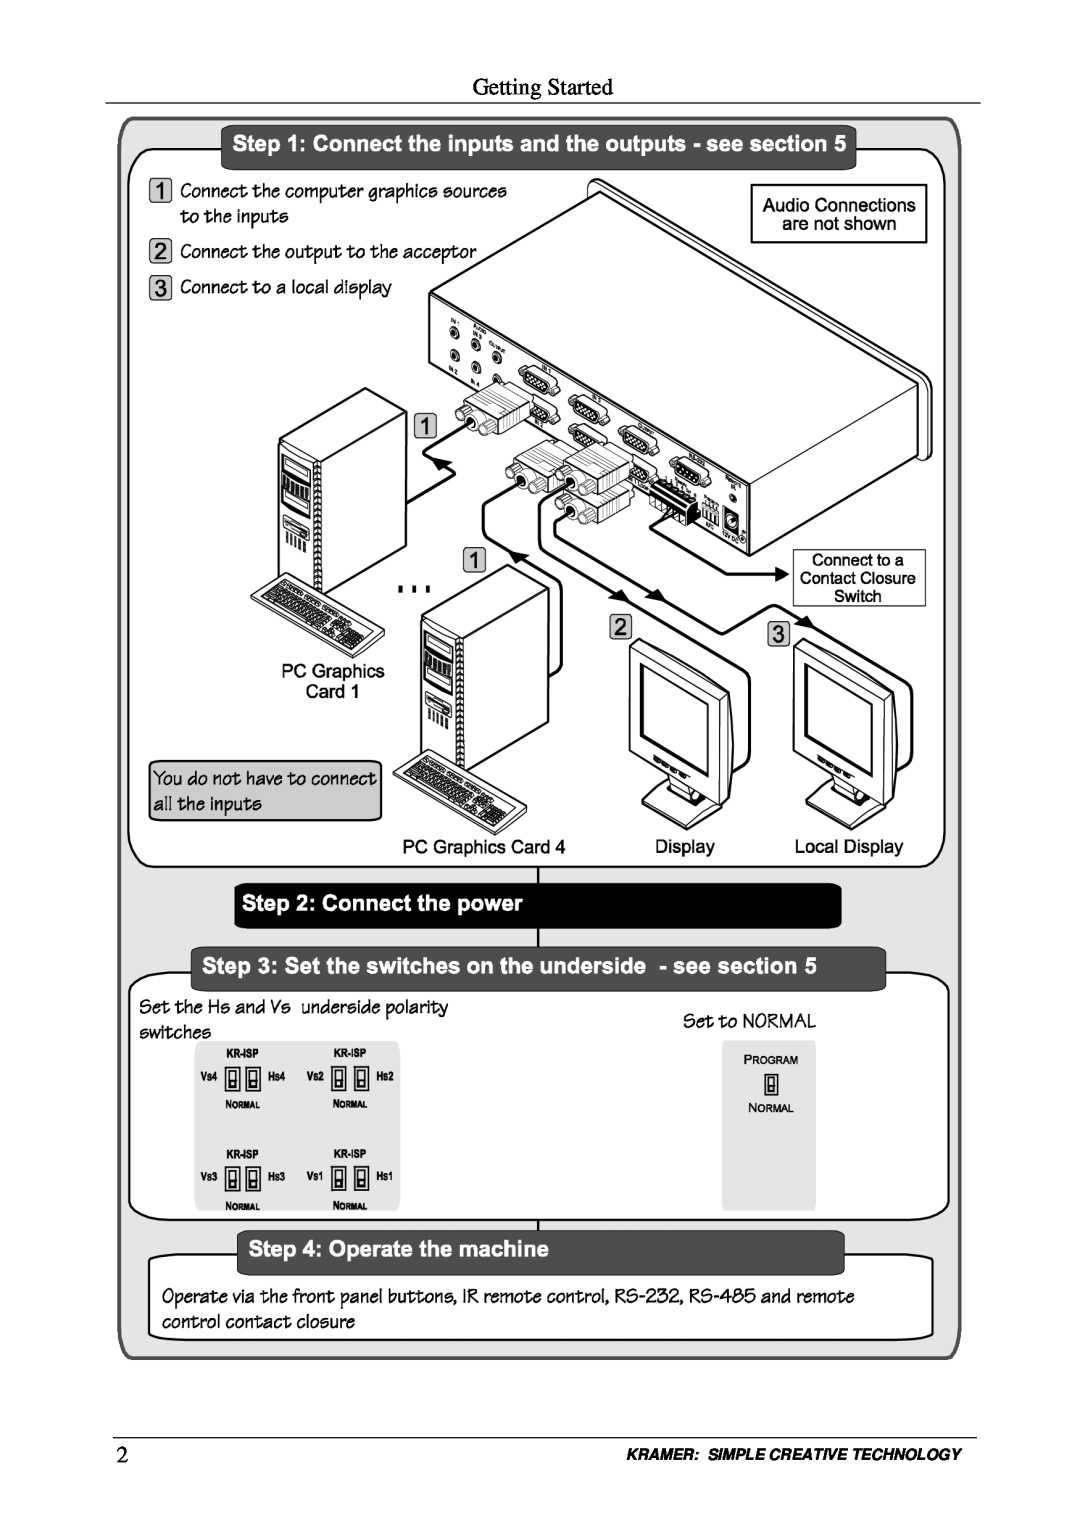 Kramer Electronics VP-411DS user manual Getting Started, Kramer Simple Creative Technology 